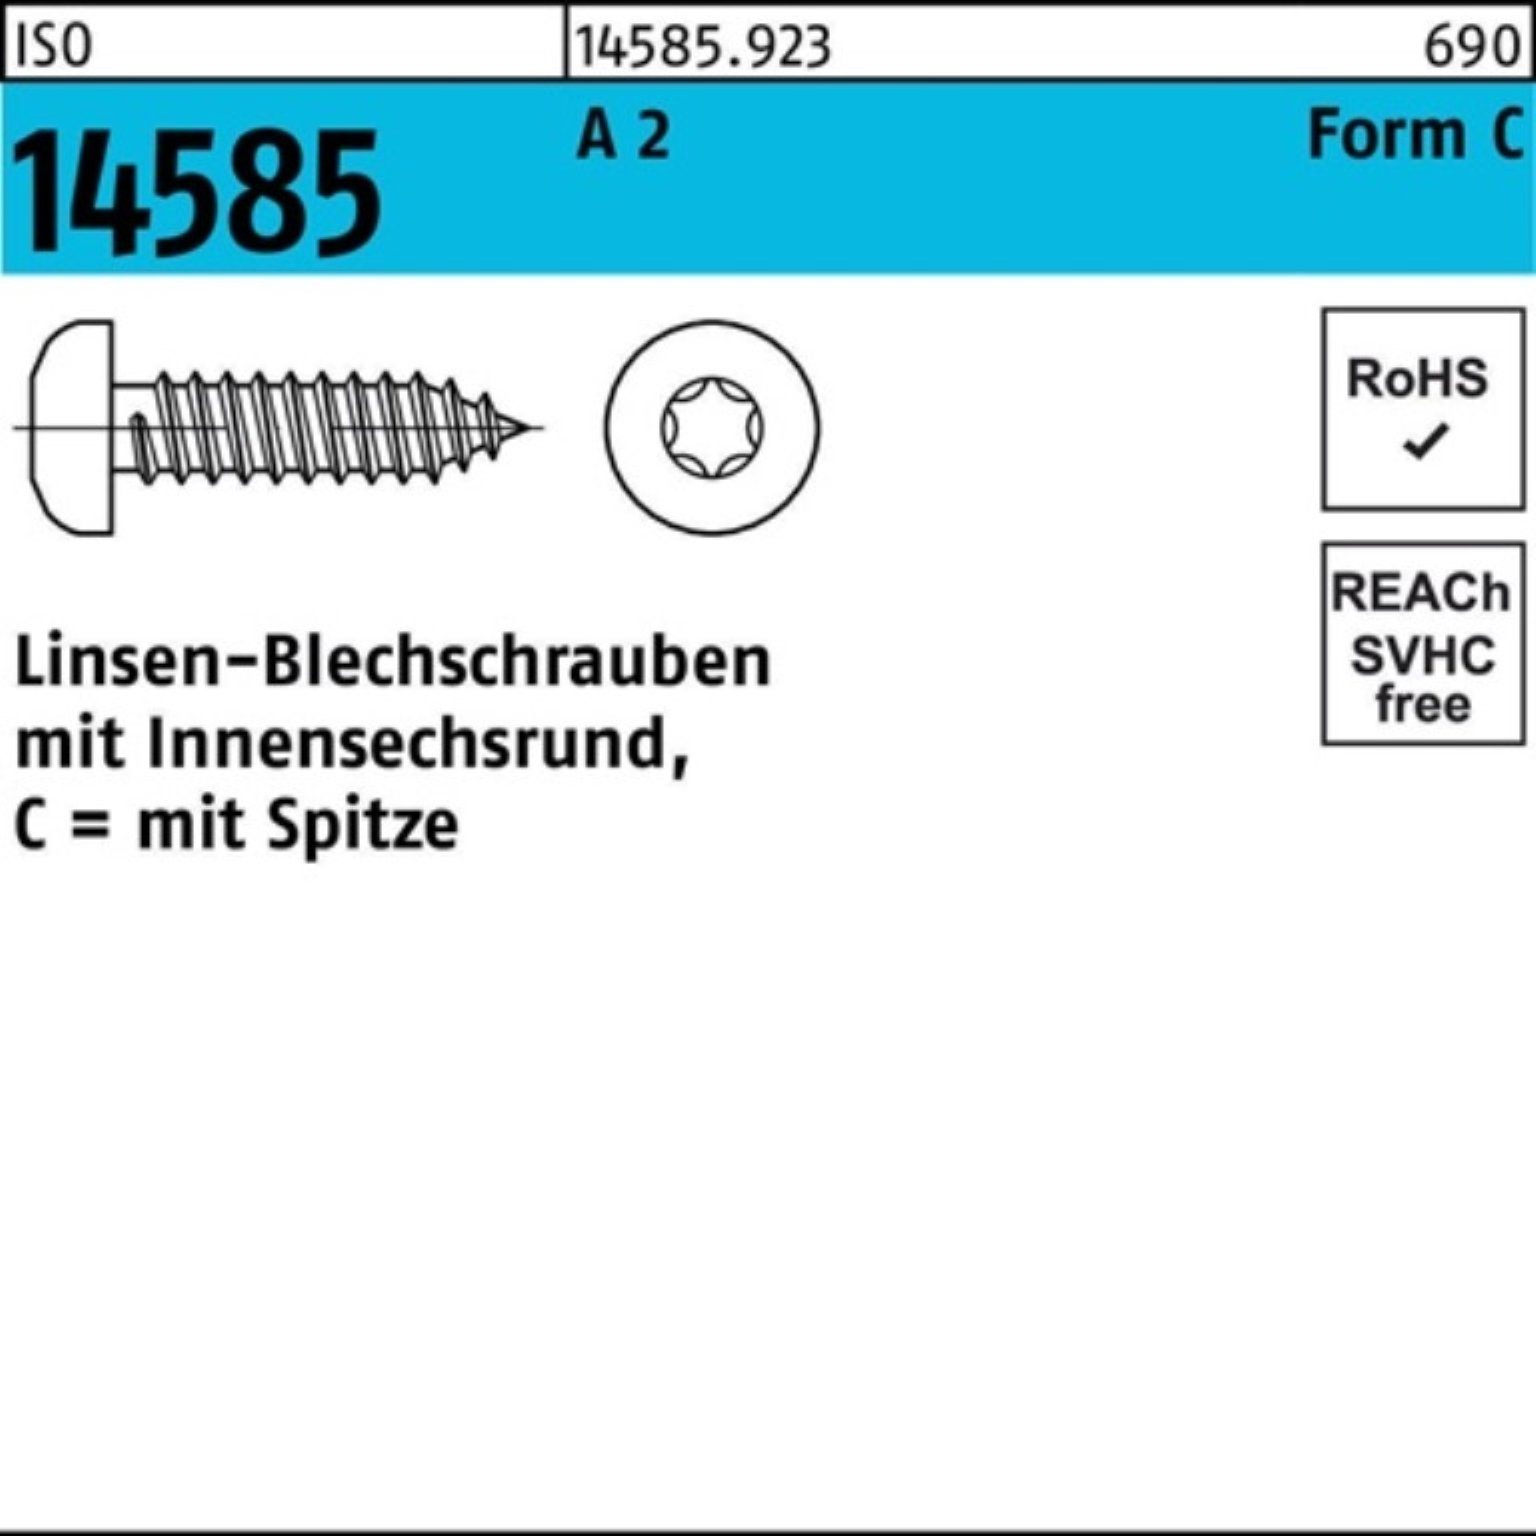 Reyher Blechschraube 1000er Pack 2 25 2,9x -C ISO ISR A 14585 T10 1000 Linsenblechschraube